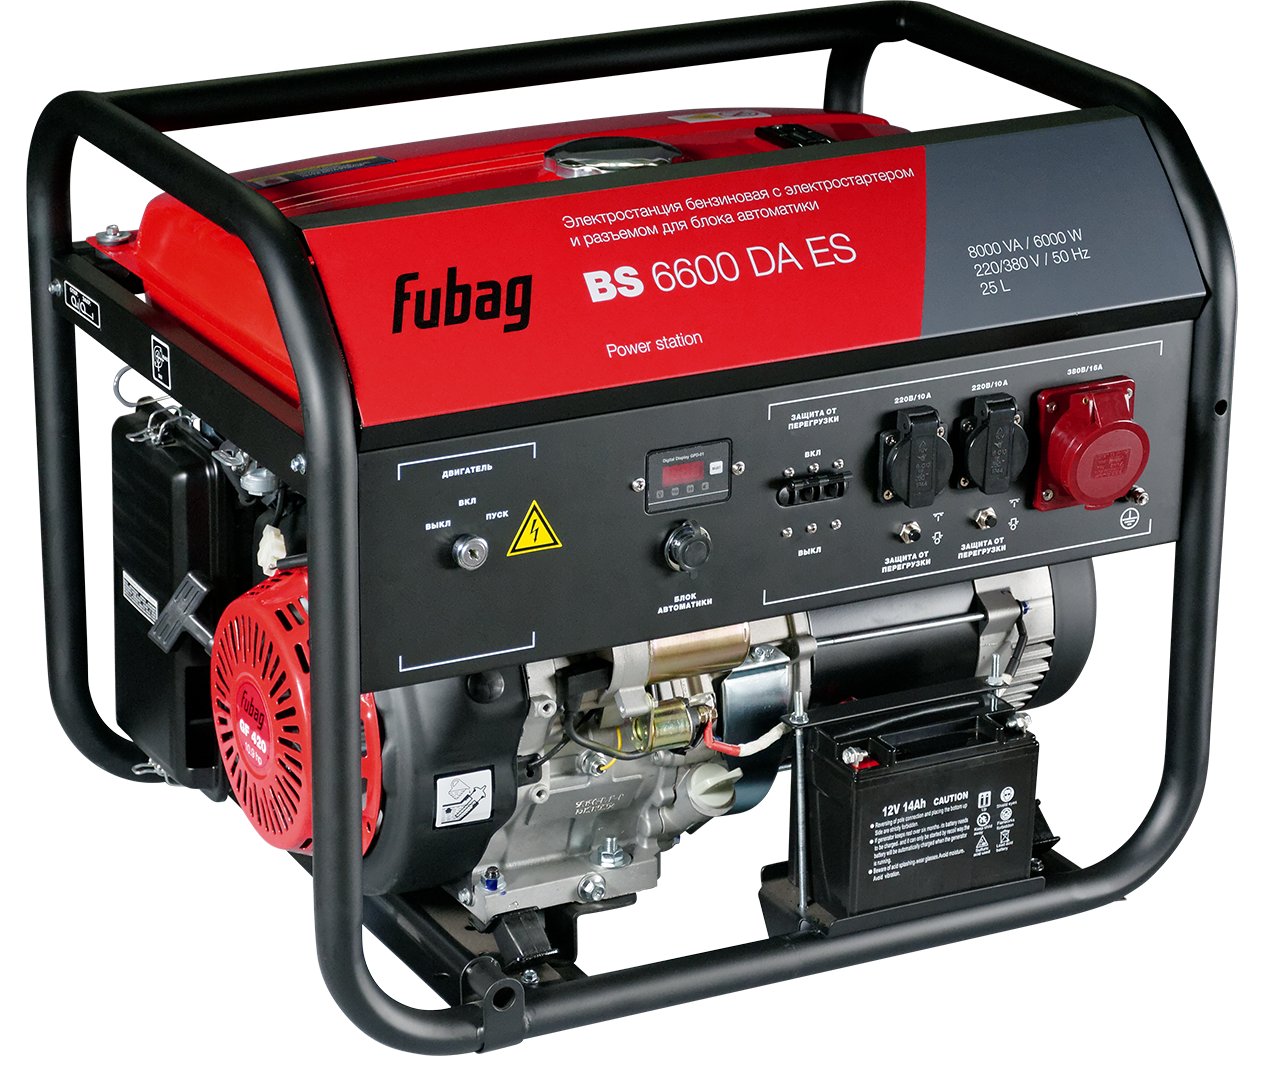 Выгодные условия покупки на бензиновый генератор с электростартером и коннектором автоматики фубаг бс 6600 да ес 5,6 квт / fubag bs da es